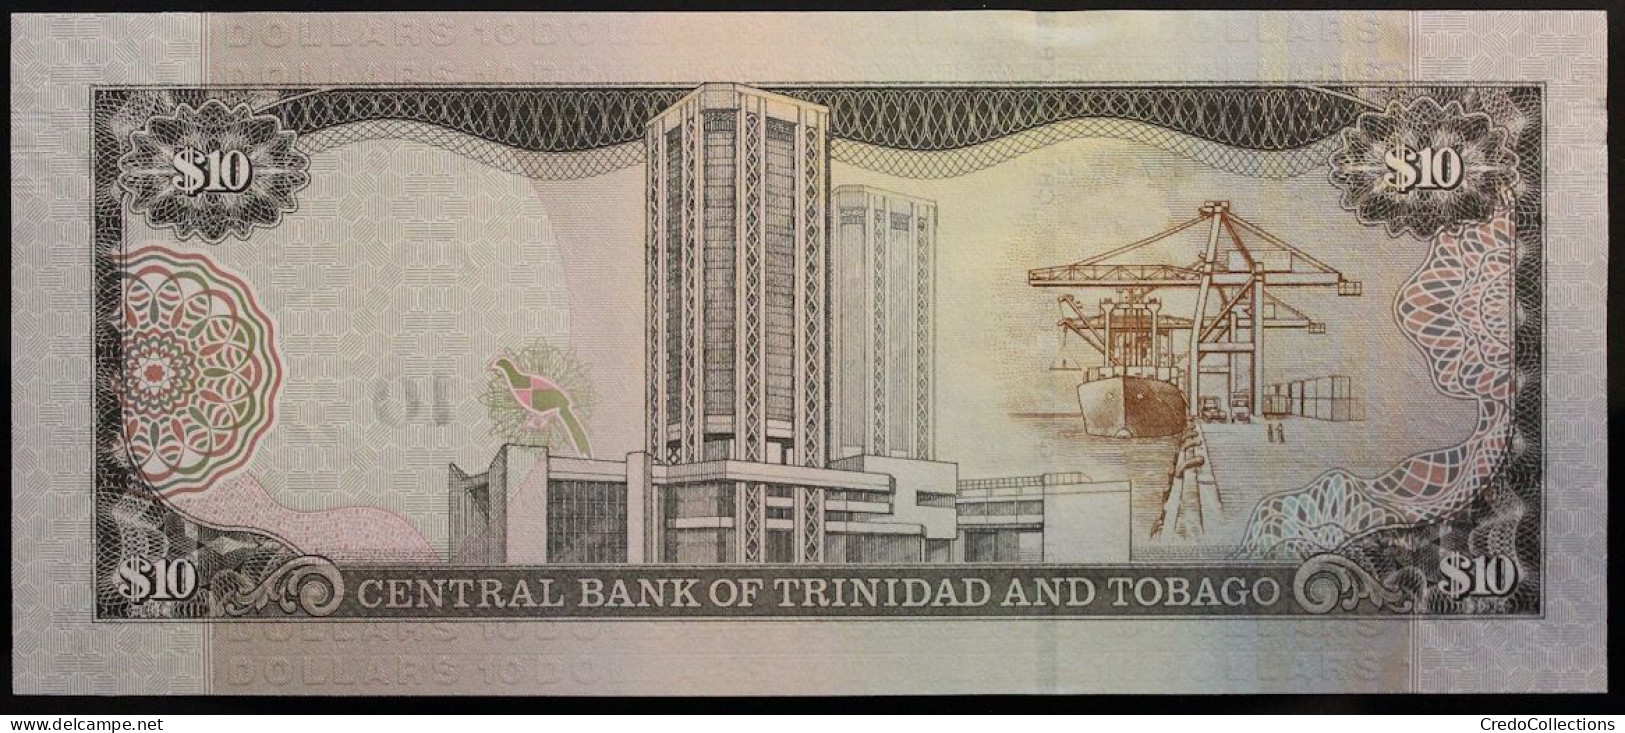 Trinitad Et Tobago - 10 Dollars - 2016 - PICK 57b - NEUF - Trinidad & Tobago